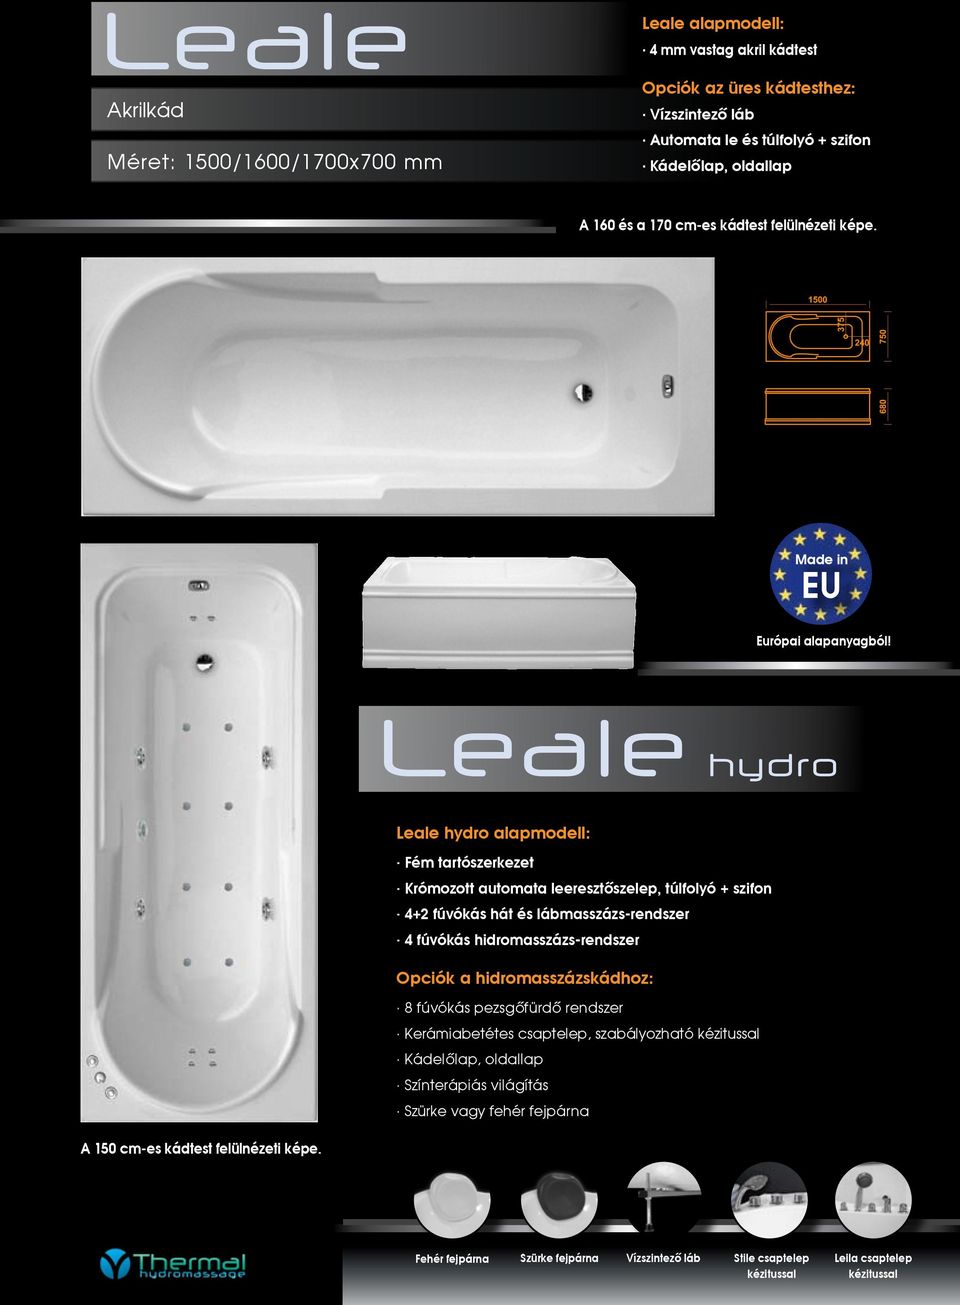 Leale hydro Leale hydro alapmodell: Krómozott automata leeresztőszelep, túlfolyó + szifon 4+2 fúvókás hát és lábmasszázs-rendszer 4 fúvókás hidromasszázs-rendszer Opciók a